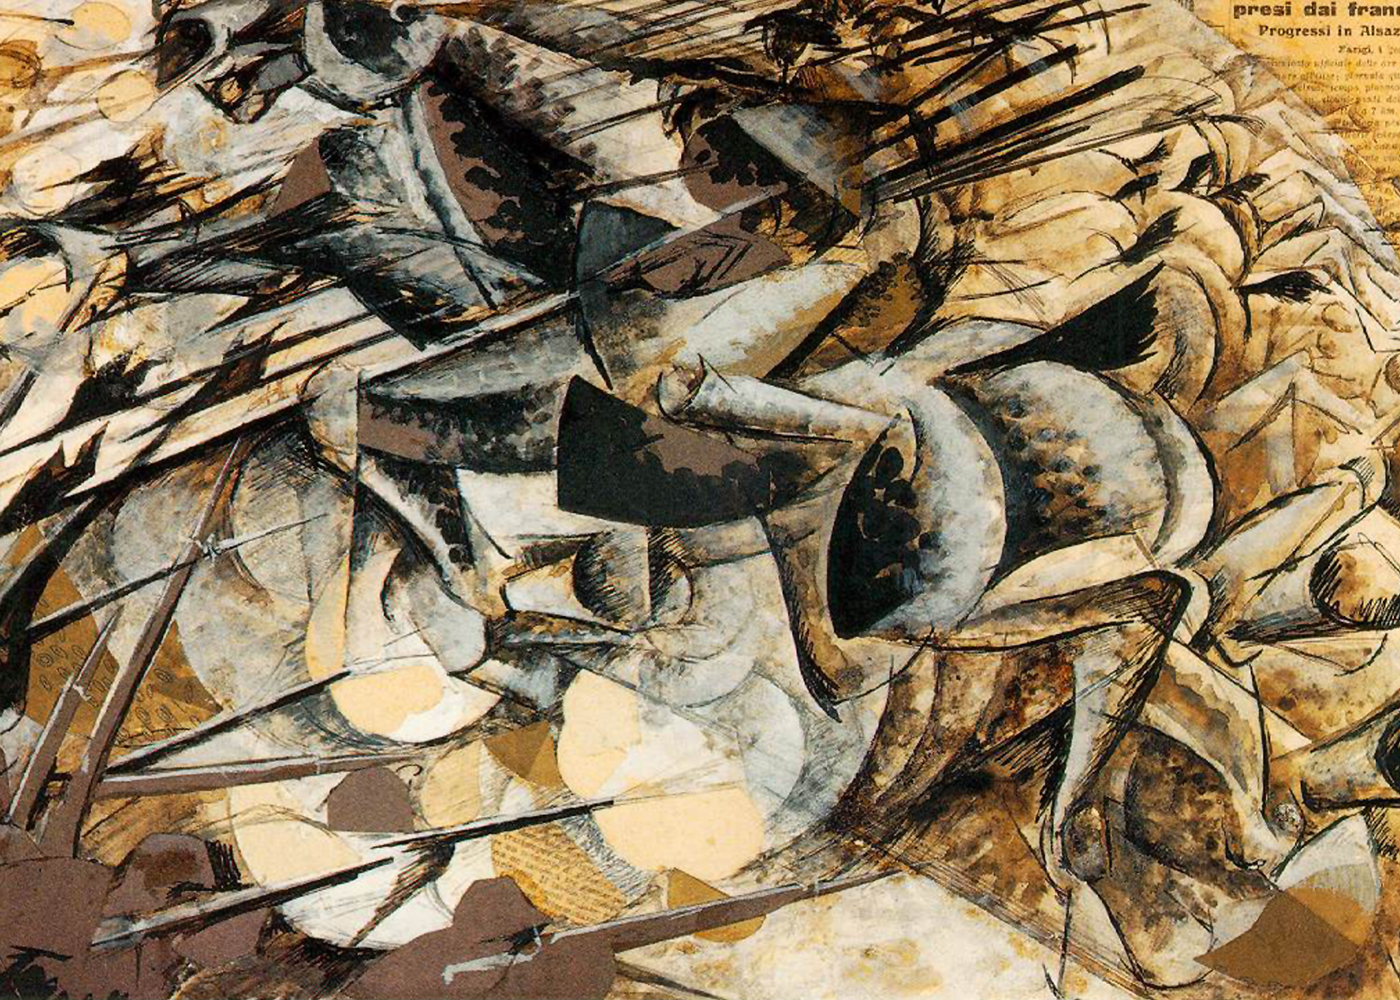 La Charge des lanciers by Umberto Boccioni - 1915 - 50 x 32 cm collection privée